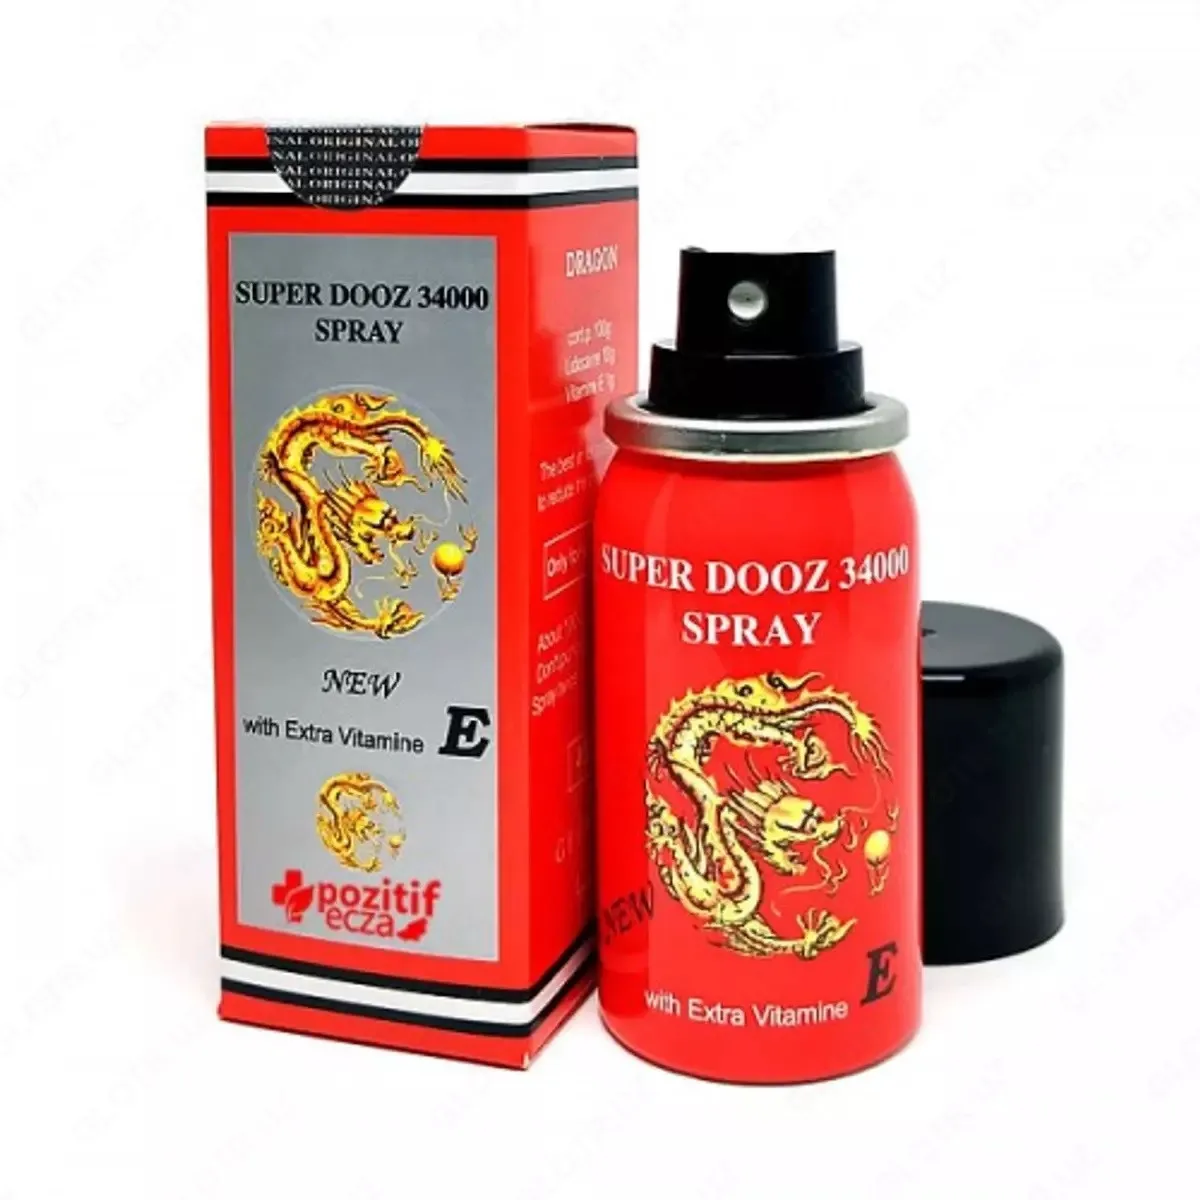 Erkaklar uchun sprey prolonatori Dragons Delay Spray 34000 (Dragon 34000) E vitamini bilan - 45 ml#2